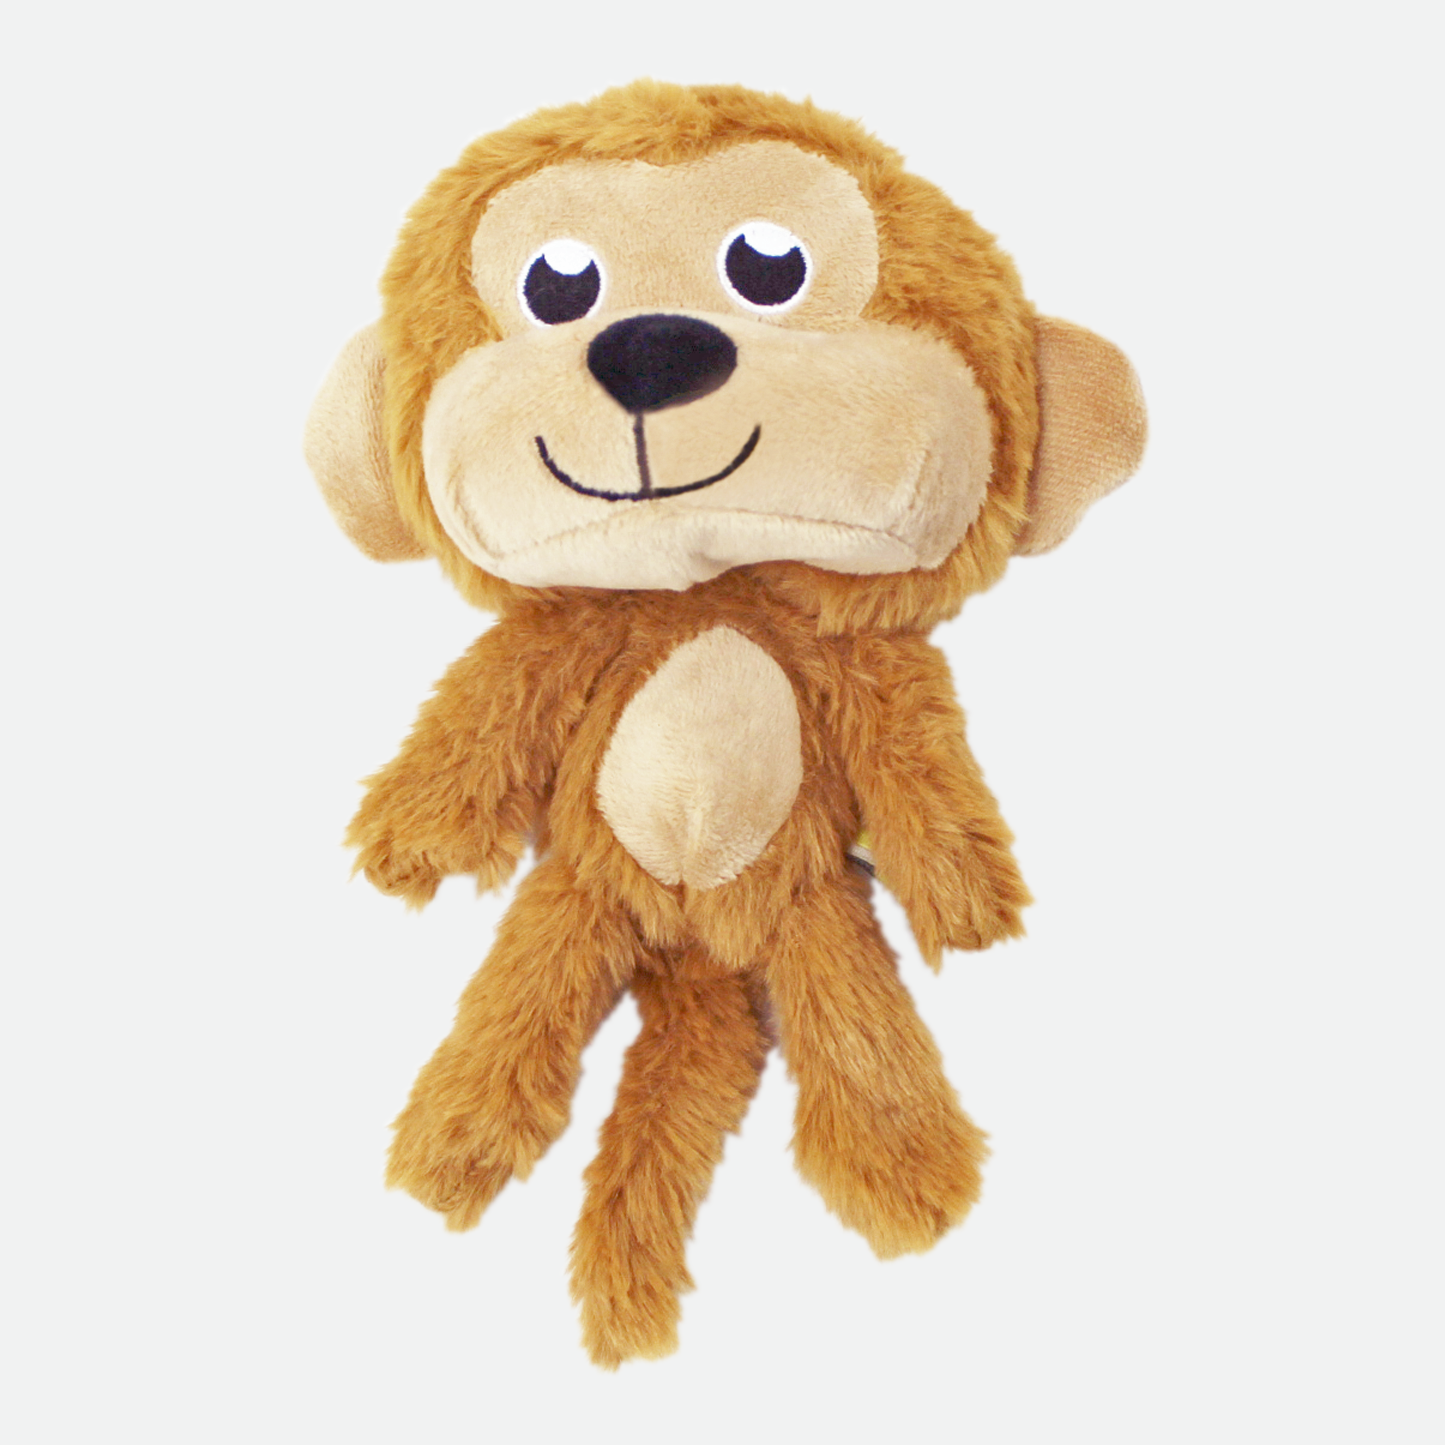 Plush toy for dog, monkey style